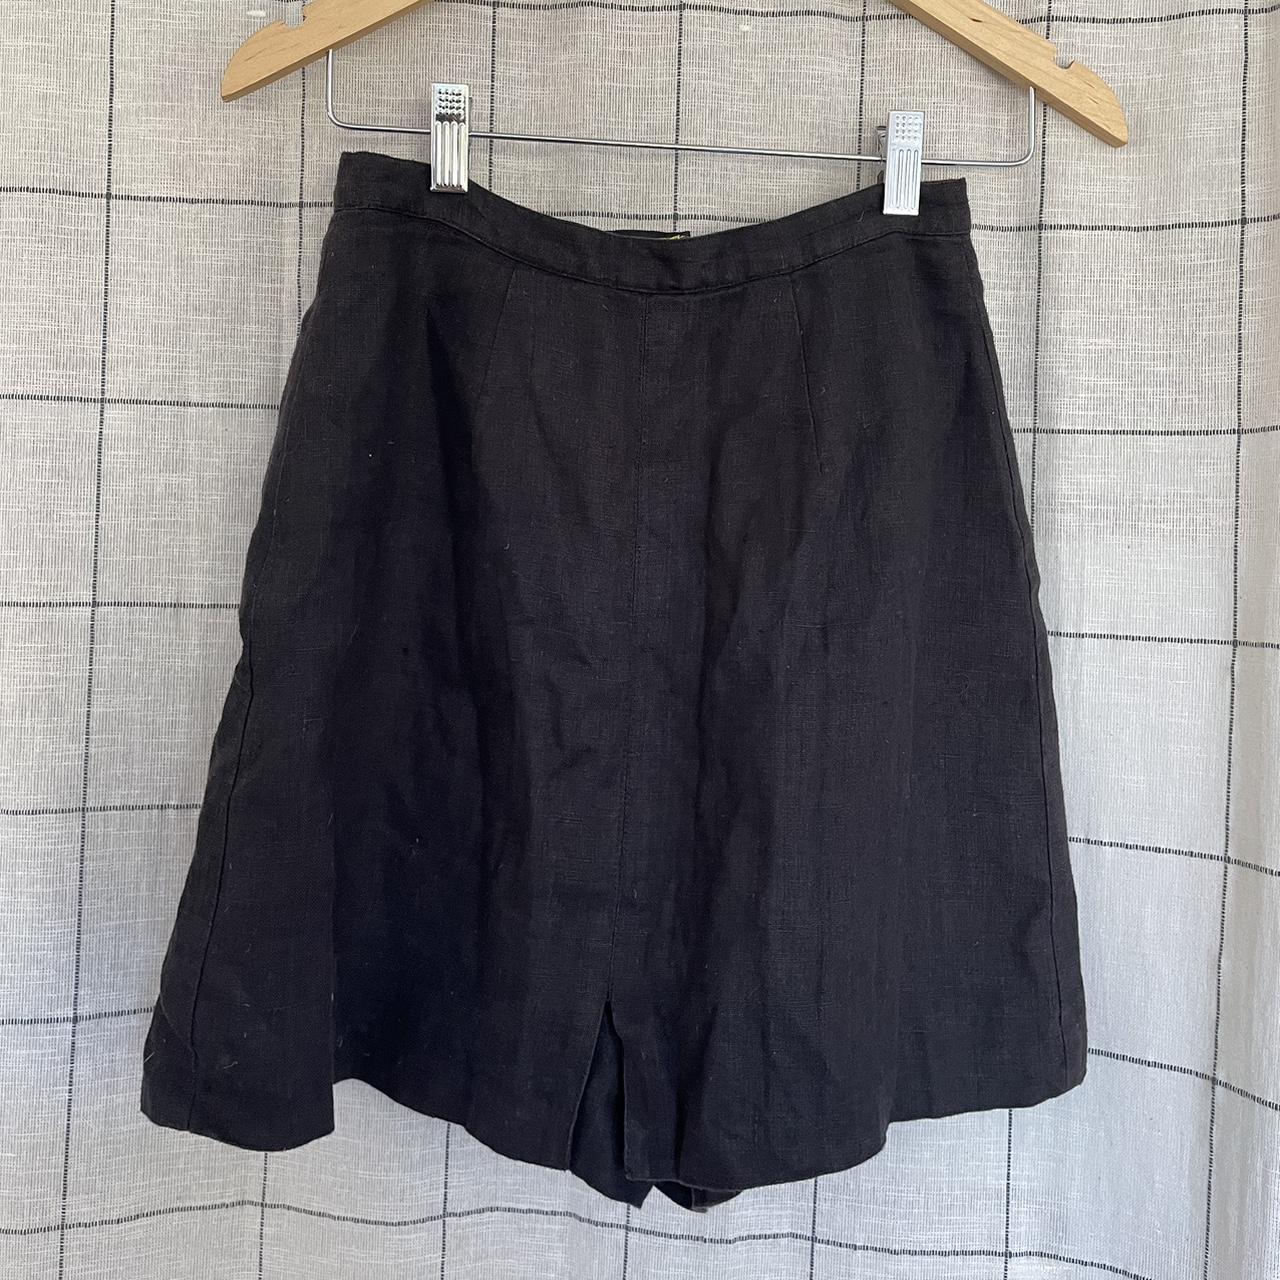 Cute vintage black SKORT (yes, skirt with internal... - Depop